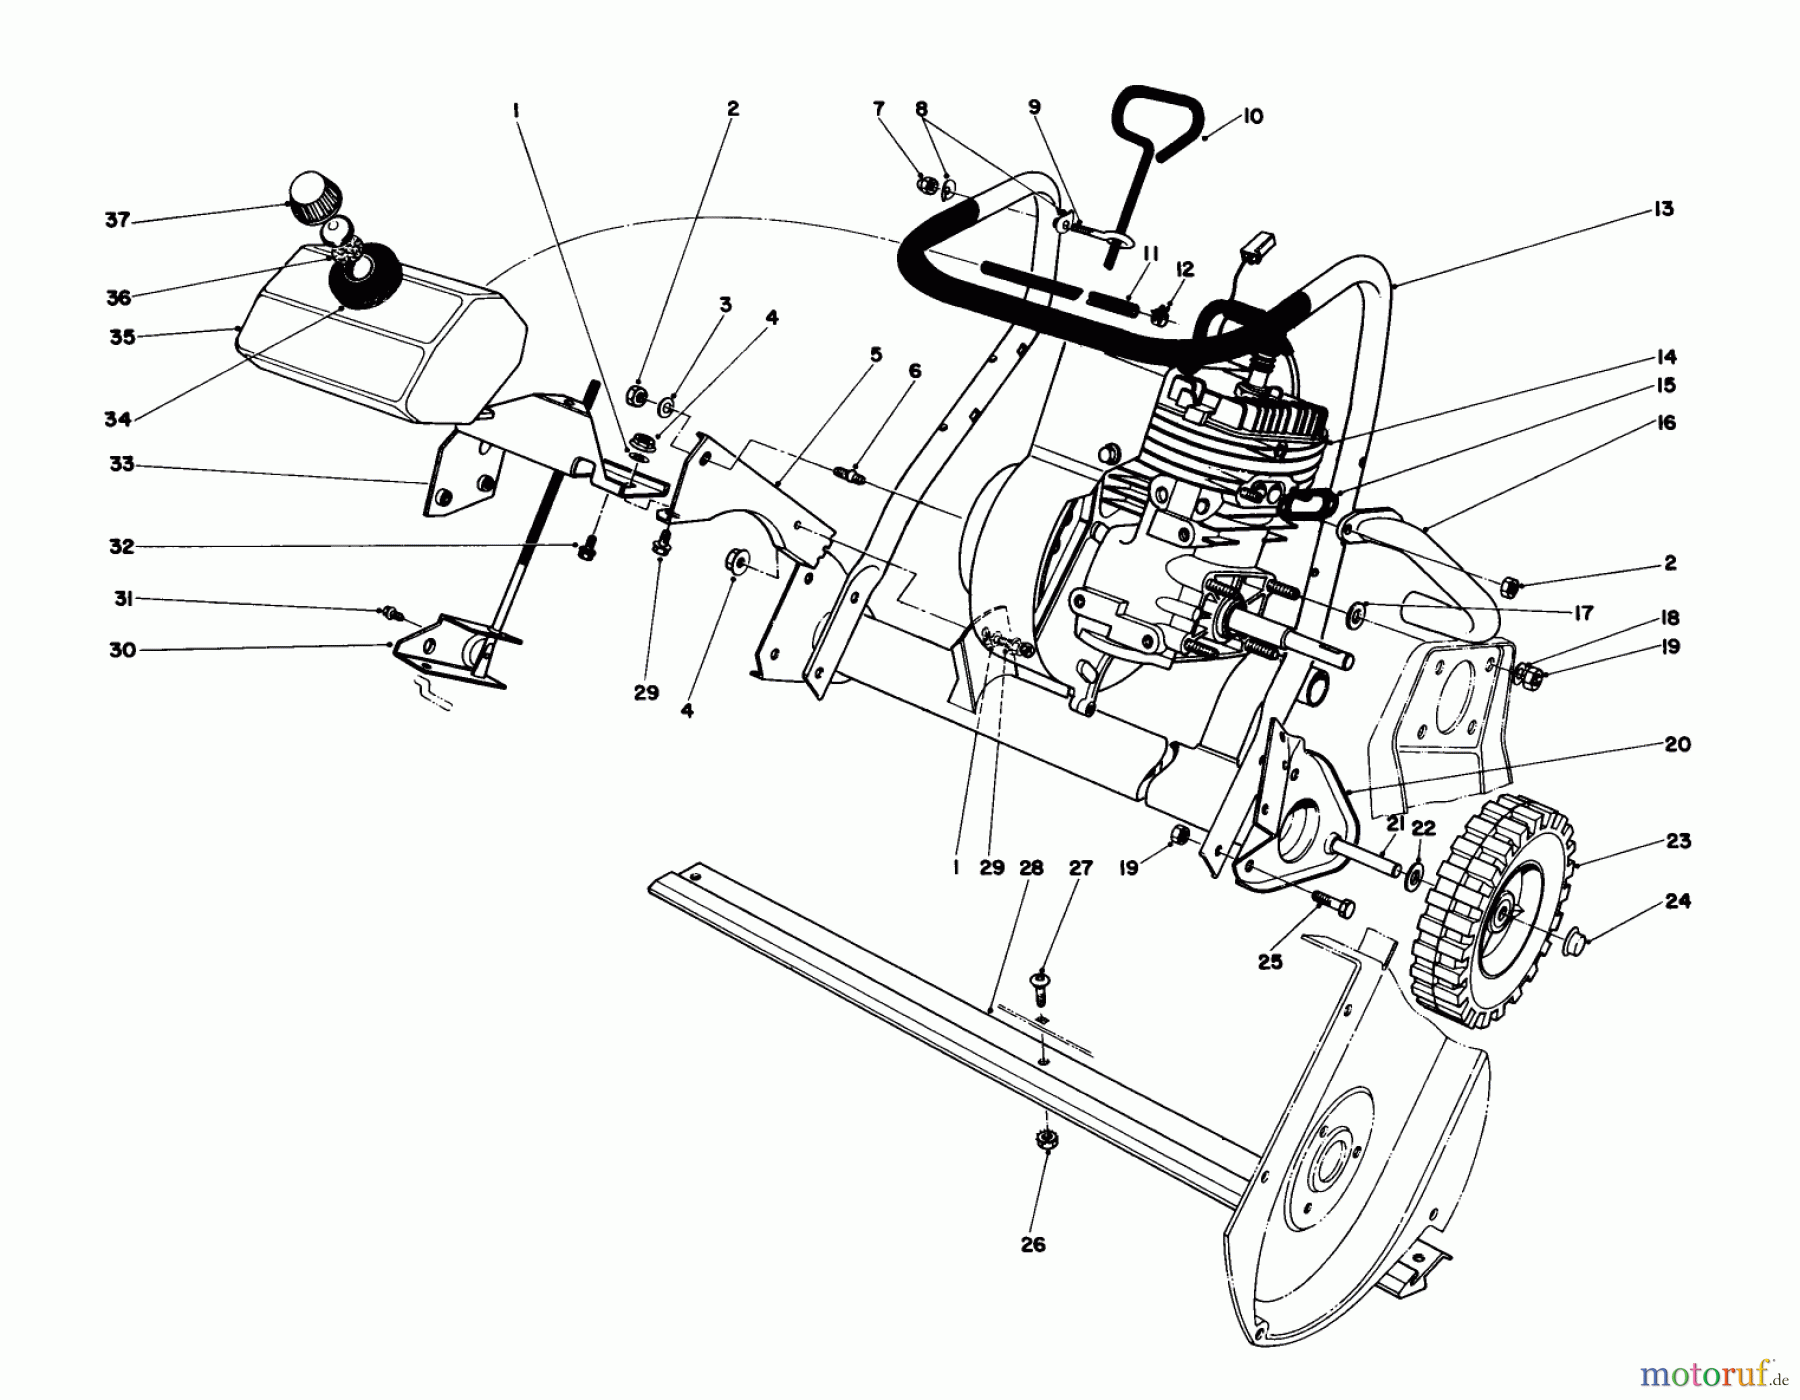  Toro Neu Snow Blowers/Snow Throwers Seite 1 38165 (S-620) - Toro S-620 Snowthrower, 1987 (7000001-7999999) ENGINE ASSEMBLY